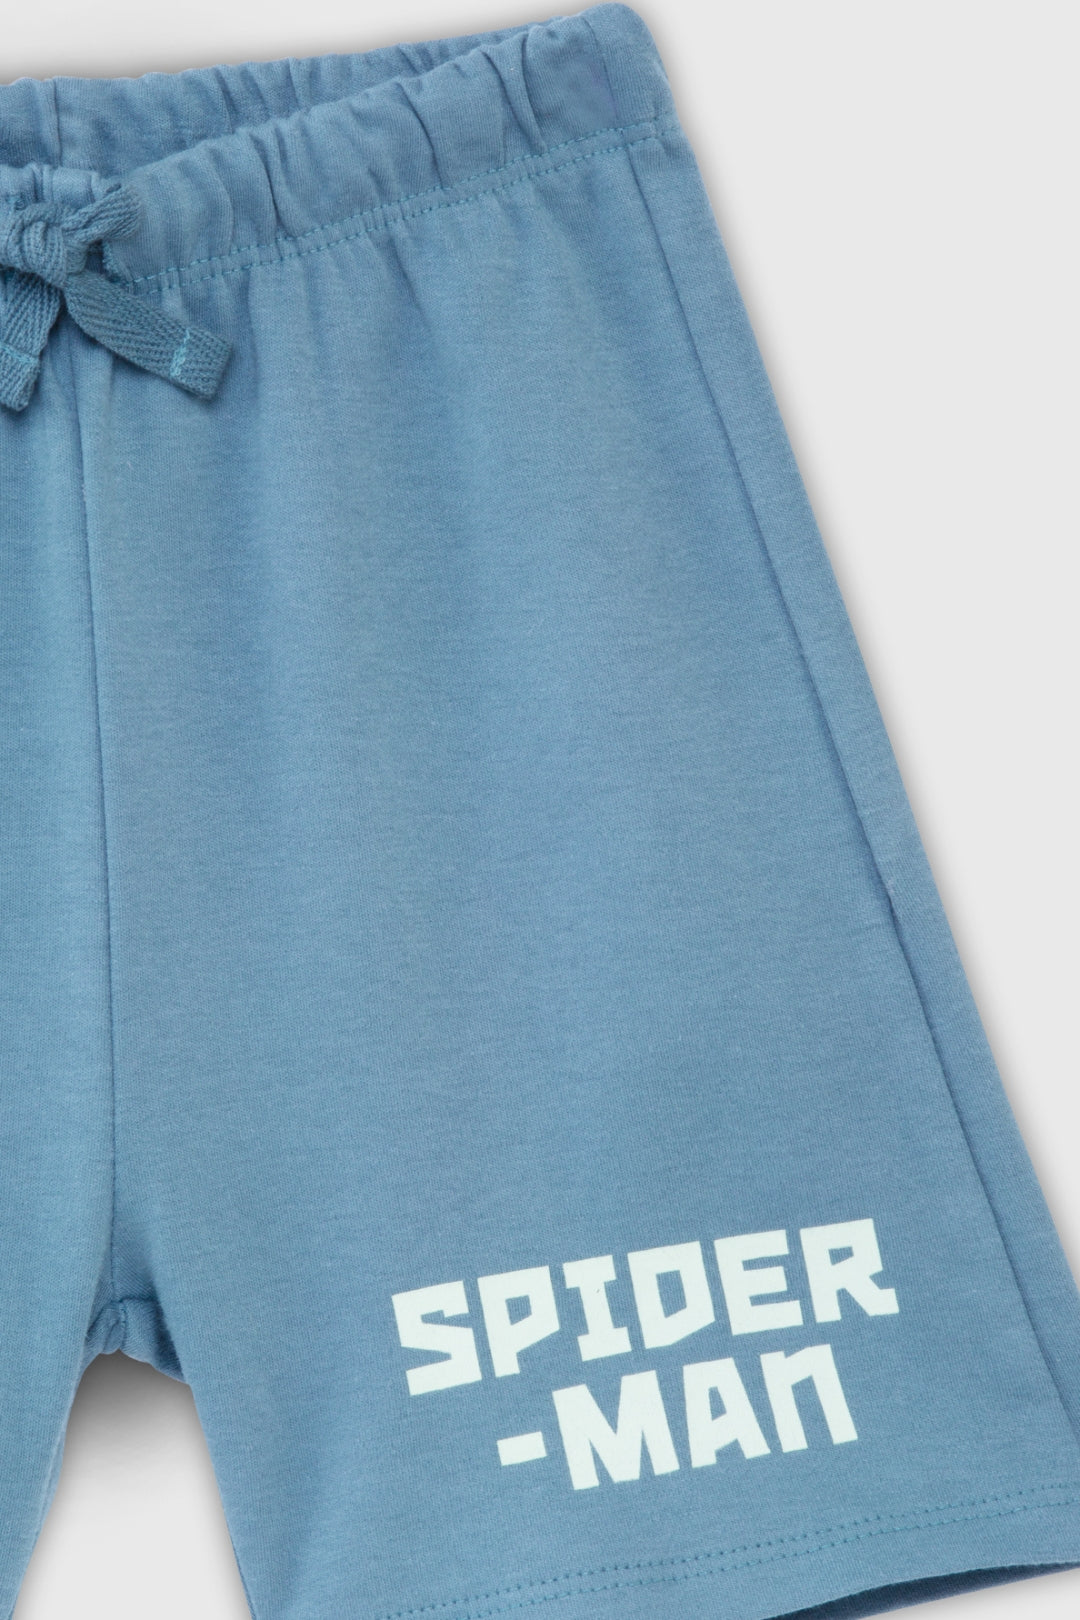 Spiderman Aqua Short Set for Infant